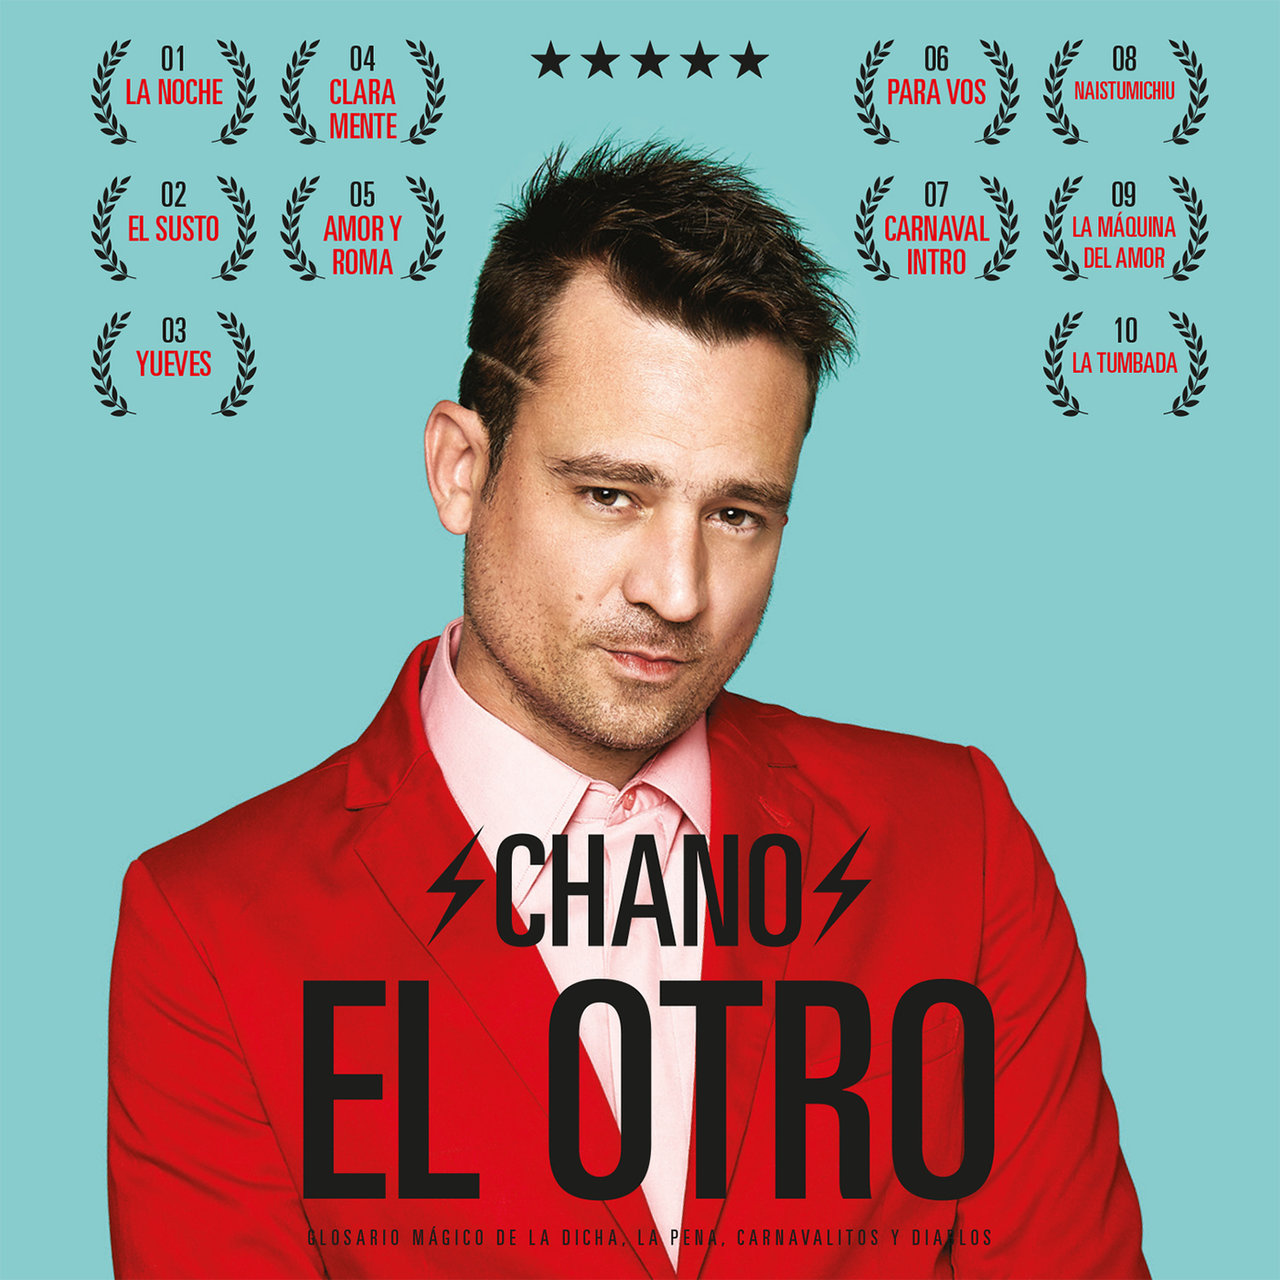 Chano El Otro cover artwork